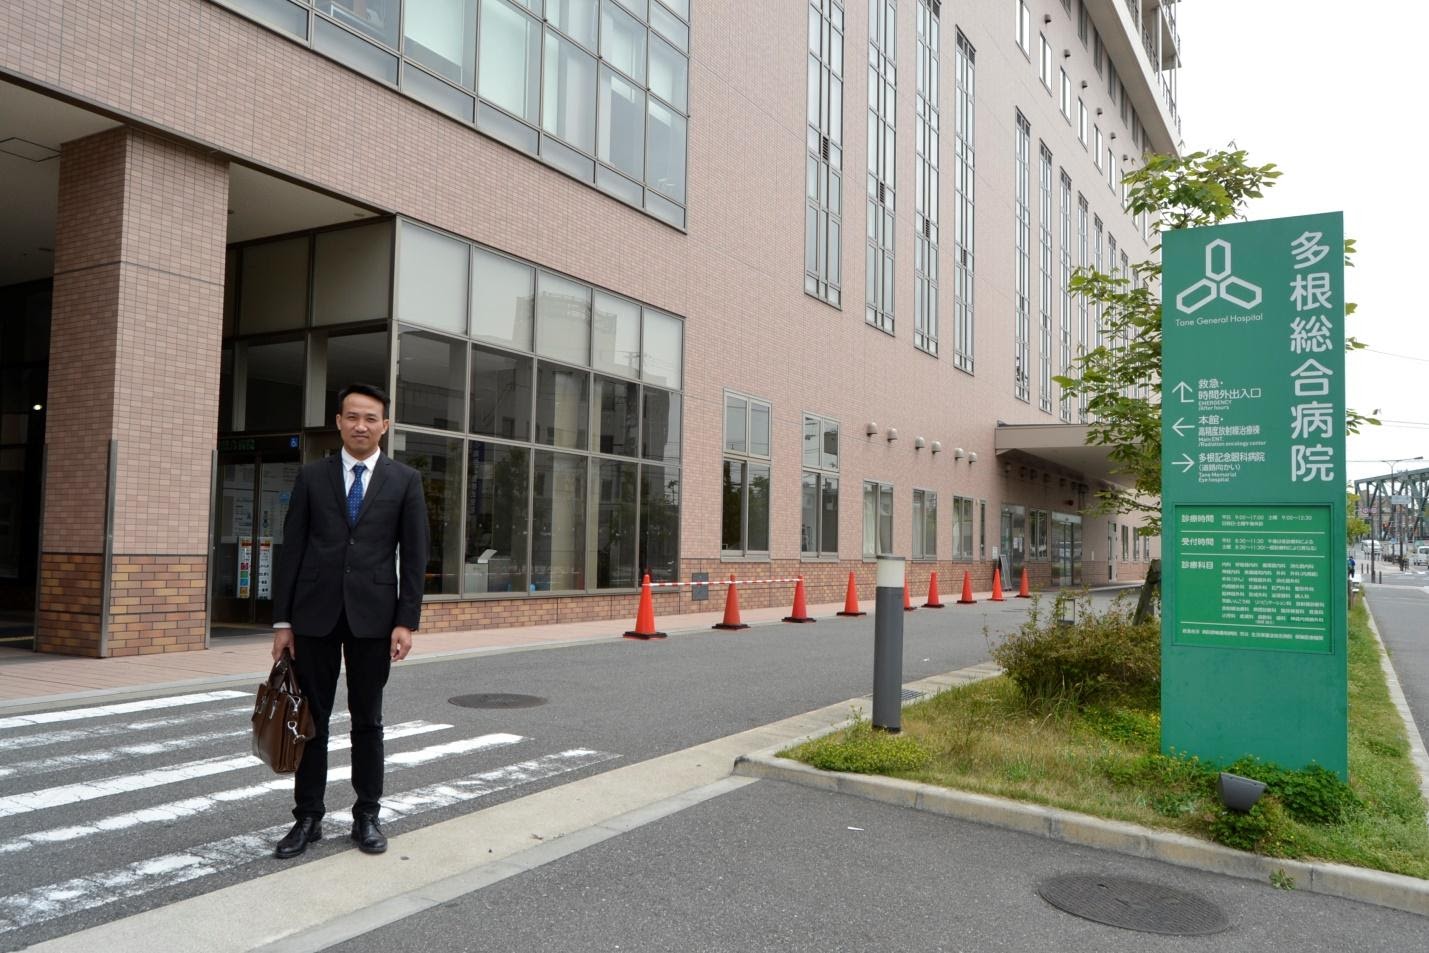  Giới thiệu bệnh viện điều dưỡng Tane của Tổng công ty y tế xã hội Kitsukokai